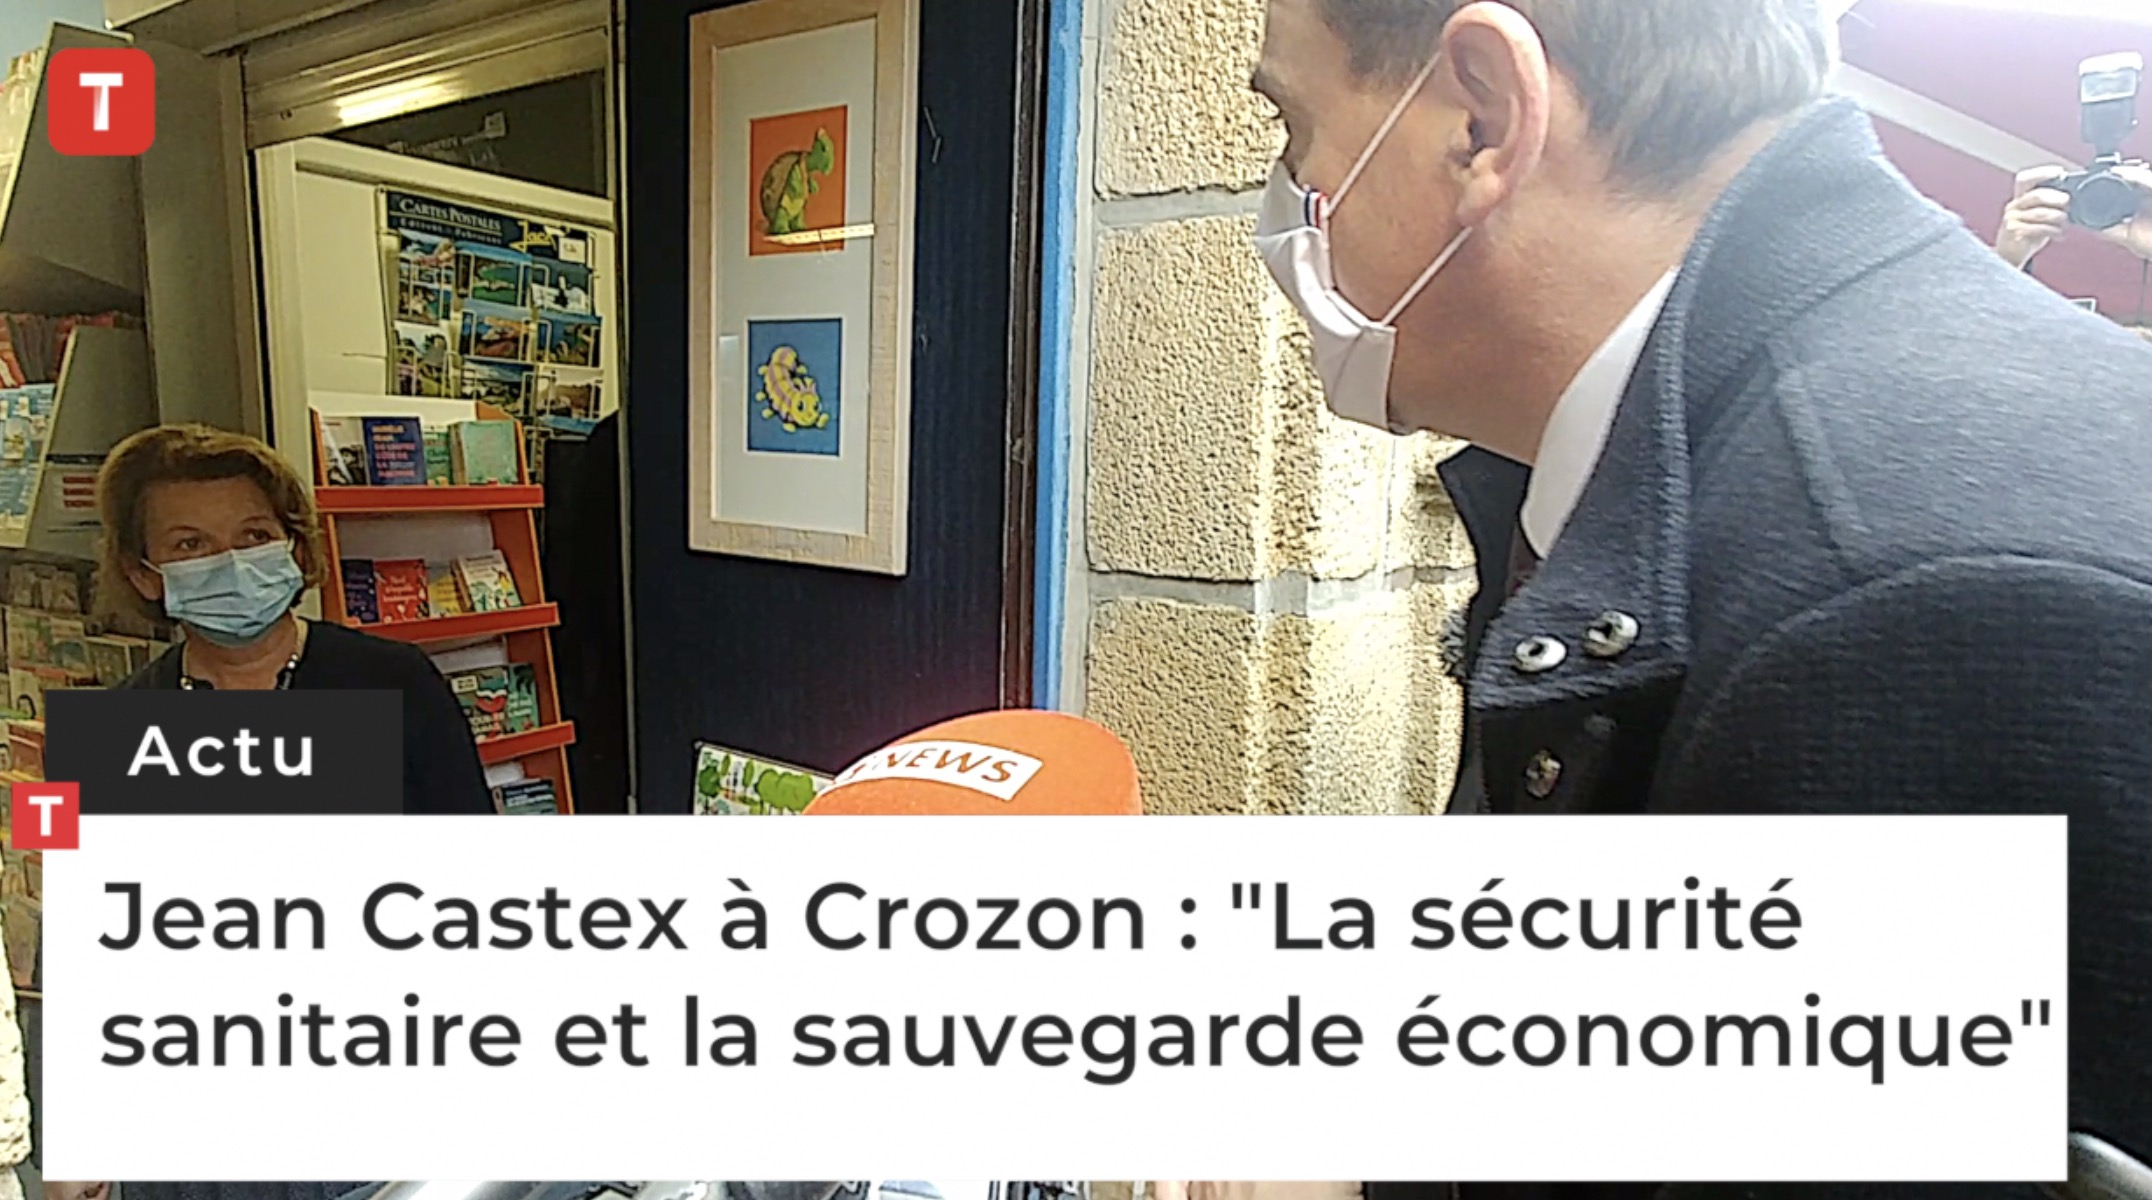 Jean Castex à Crozon : "La sécurité sanitaire et la sauvegarde économique" (Le Télégramme)